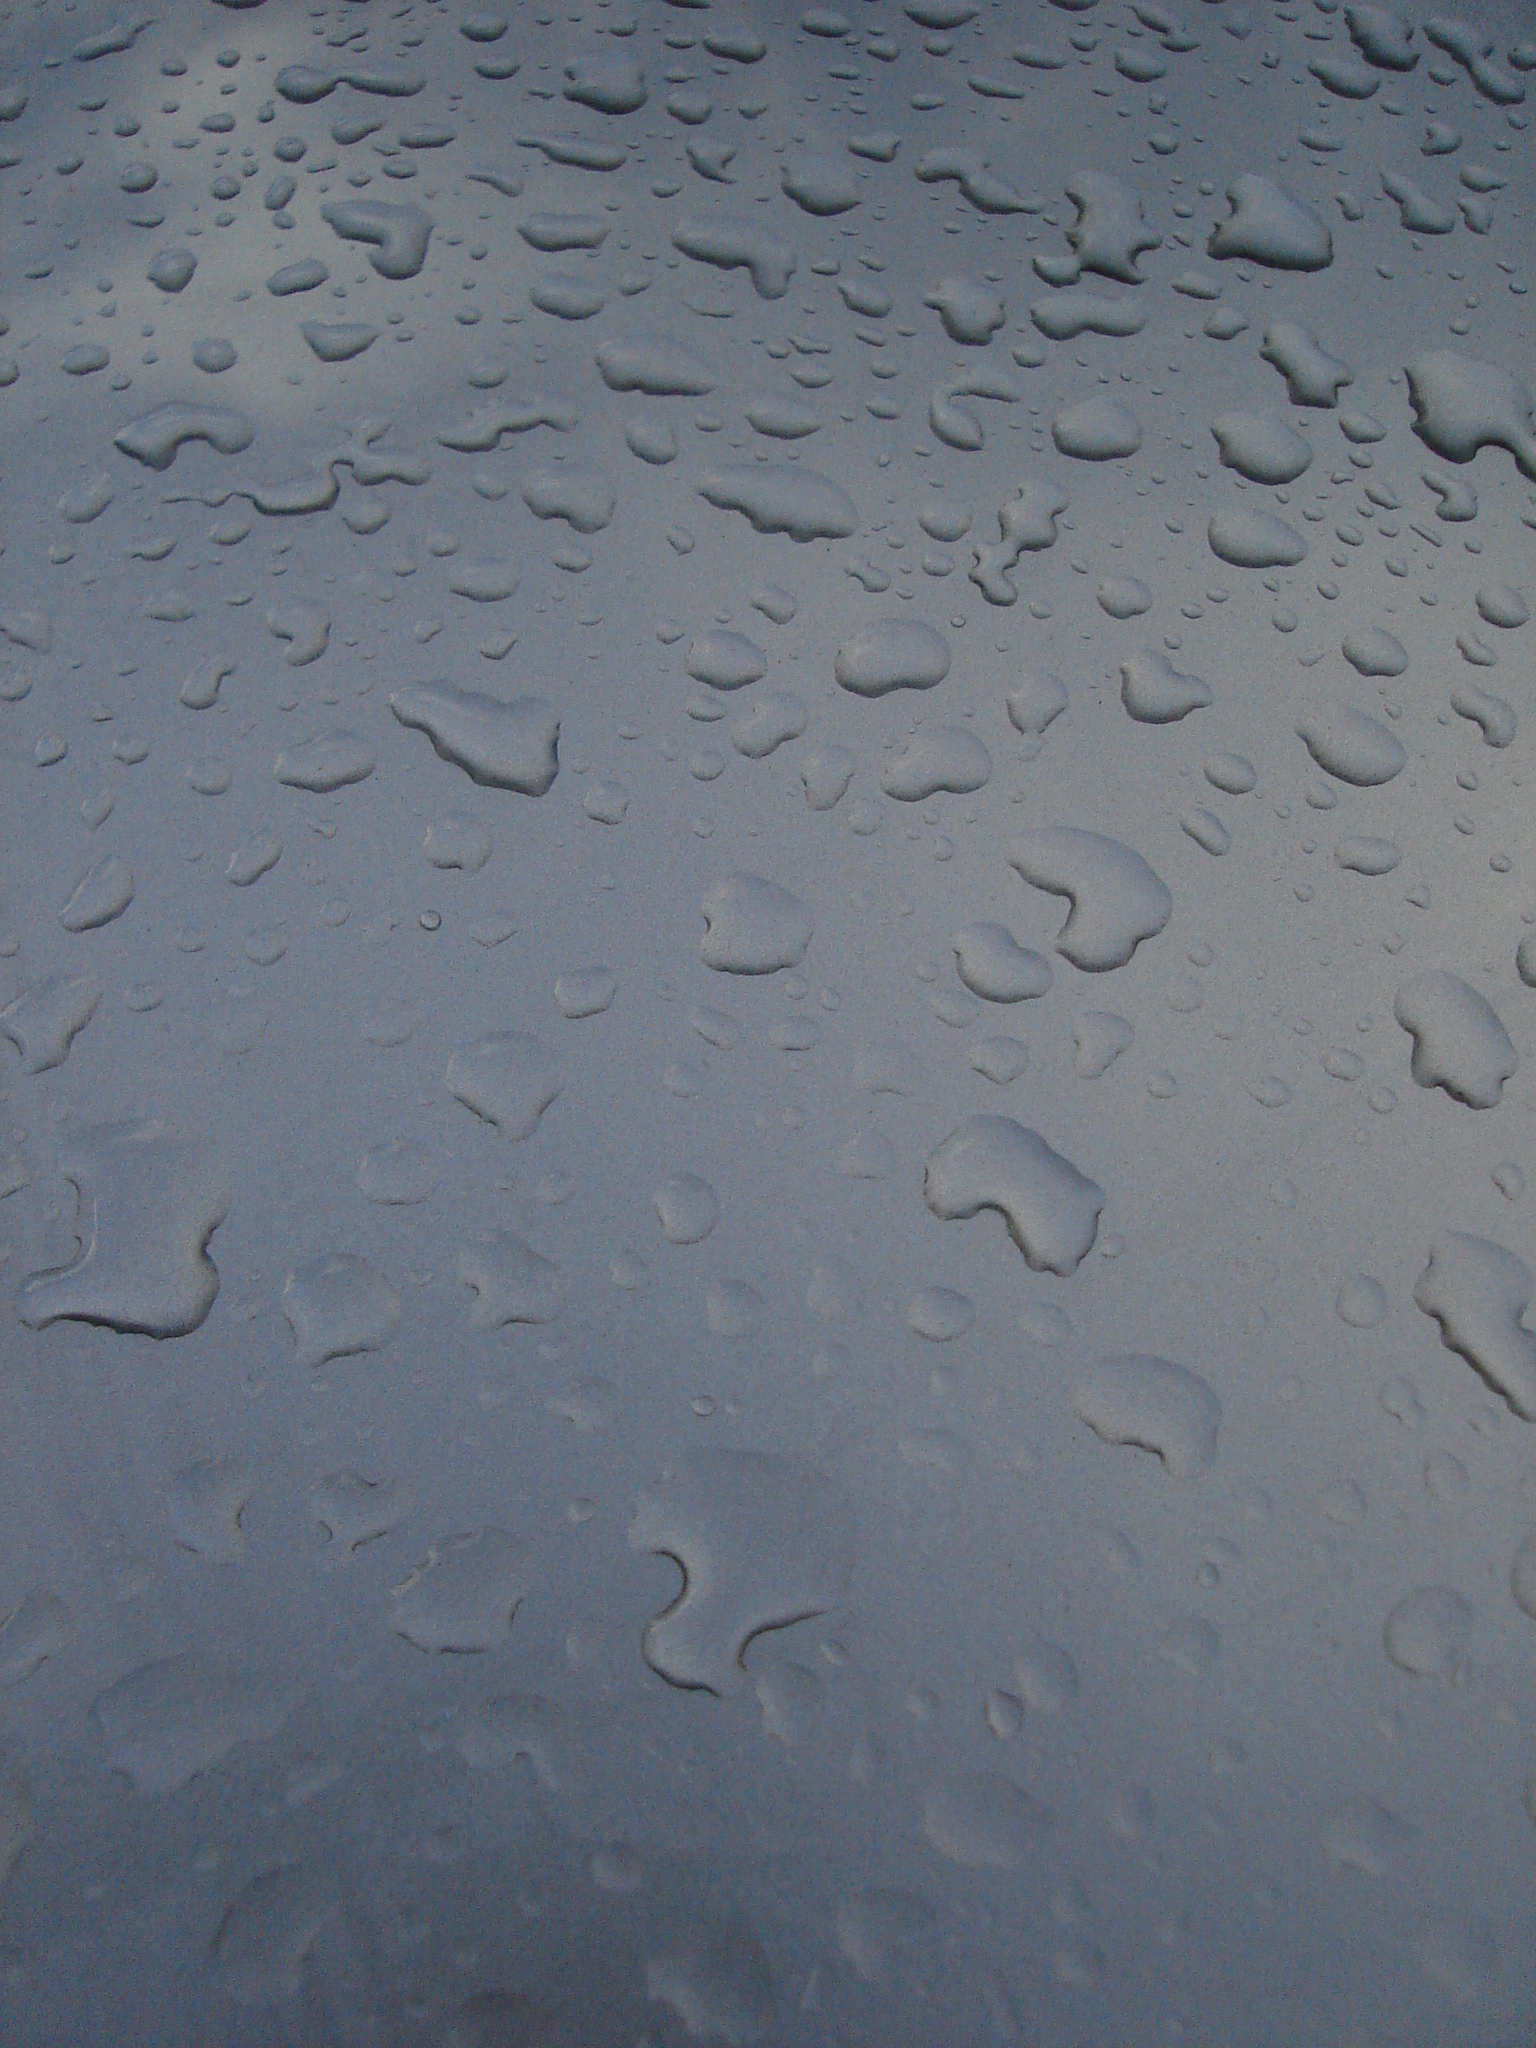 poows water drops on carpaint paint car drop moisture rain